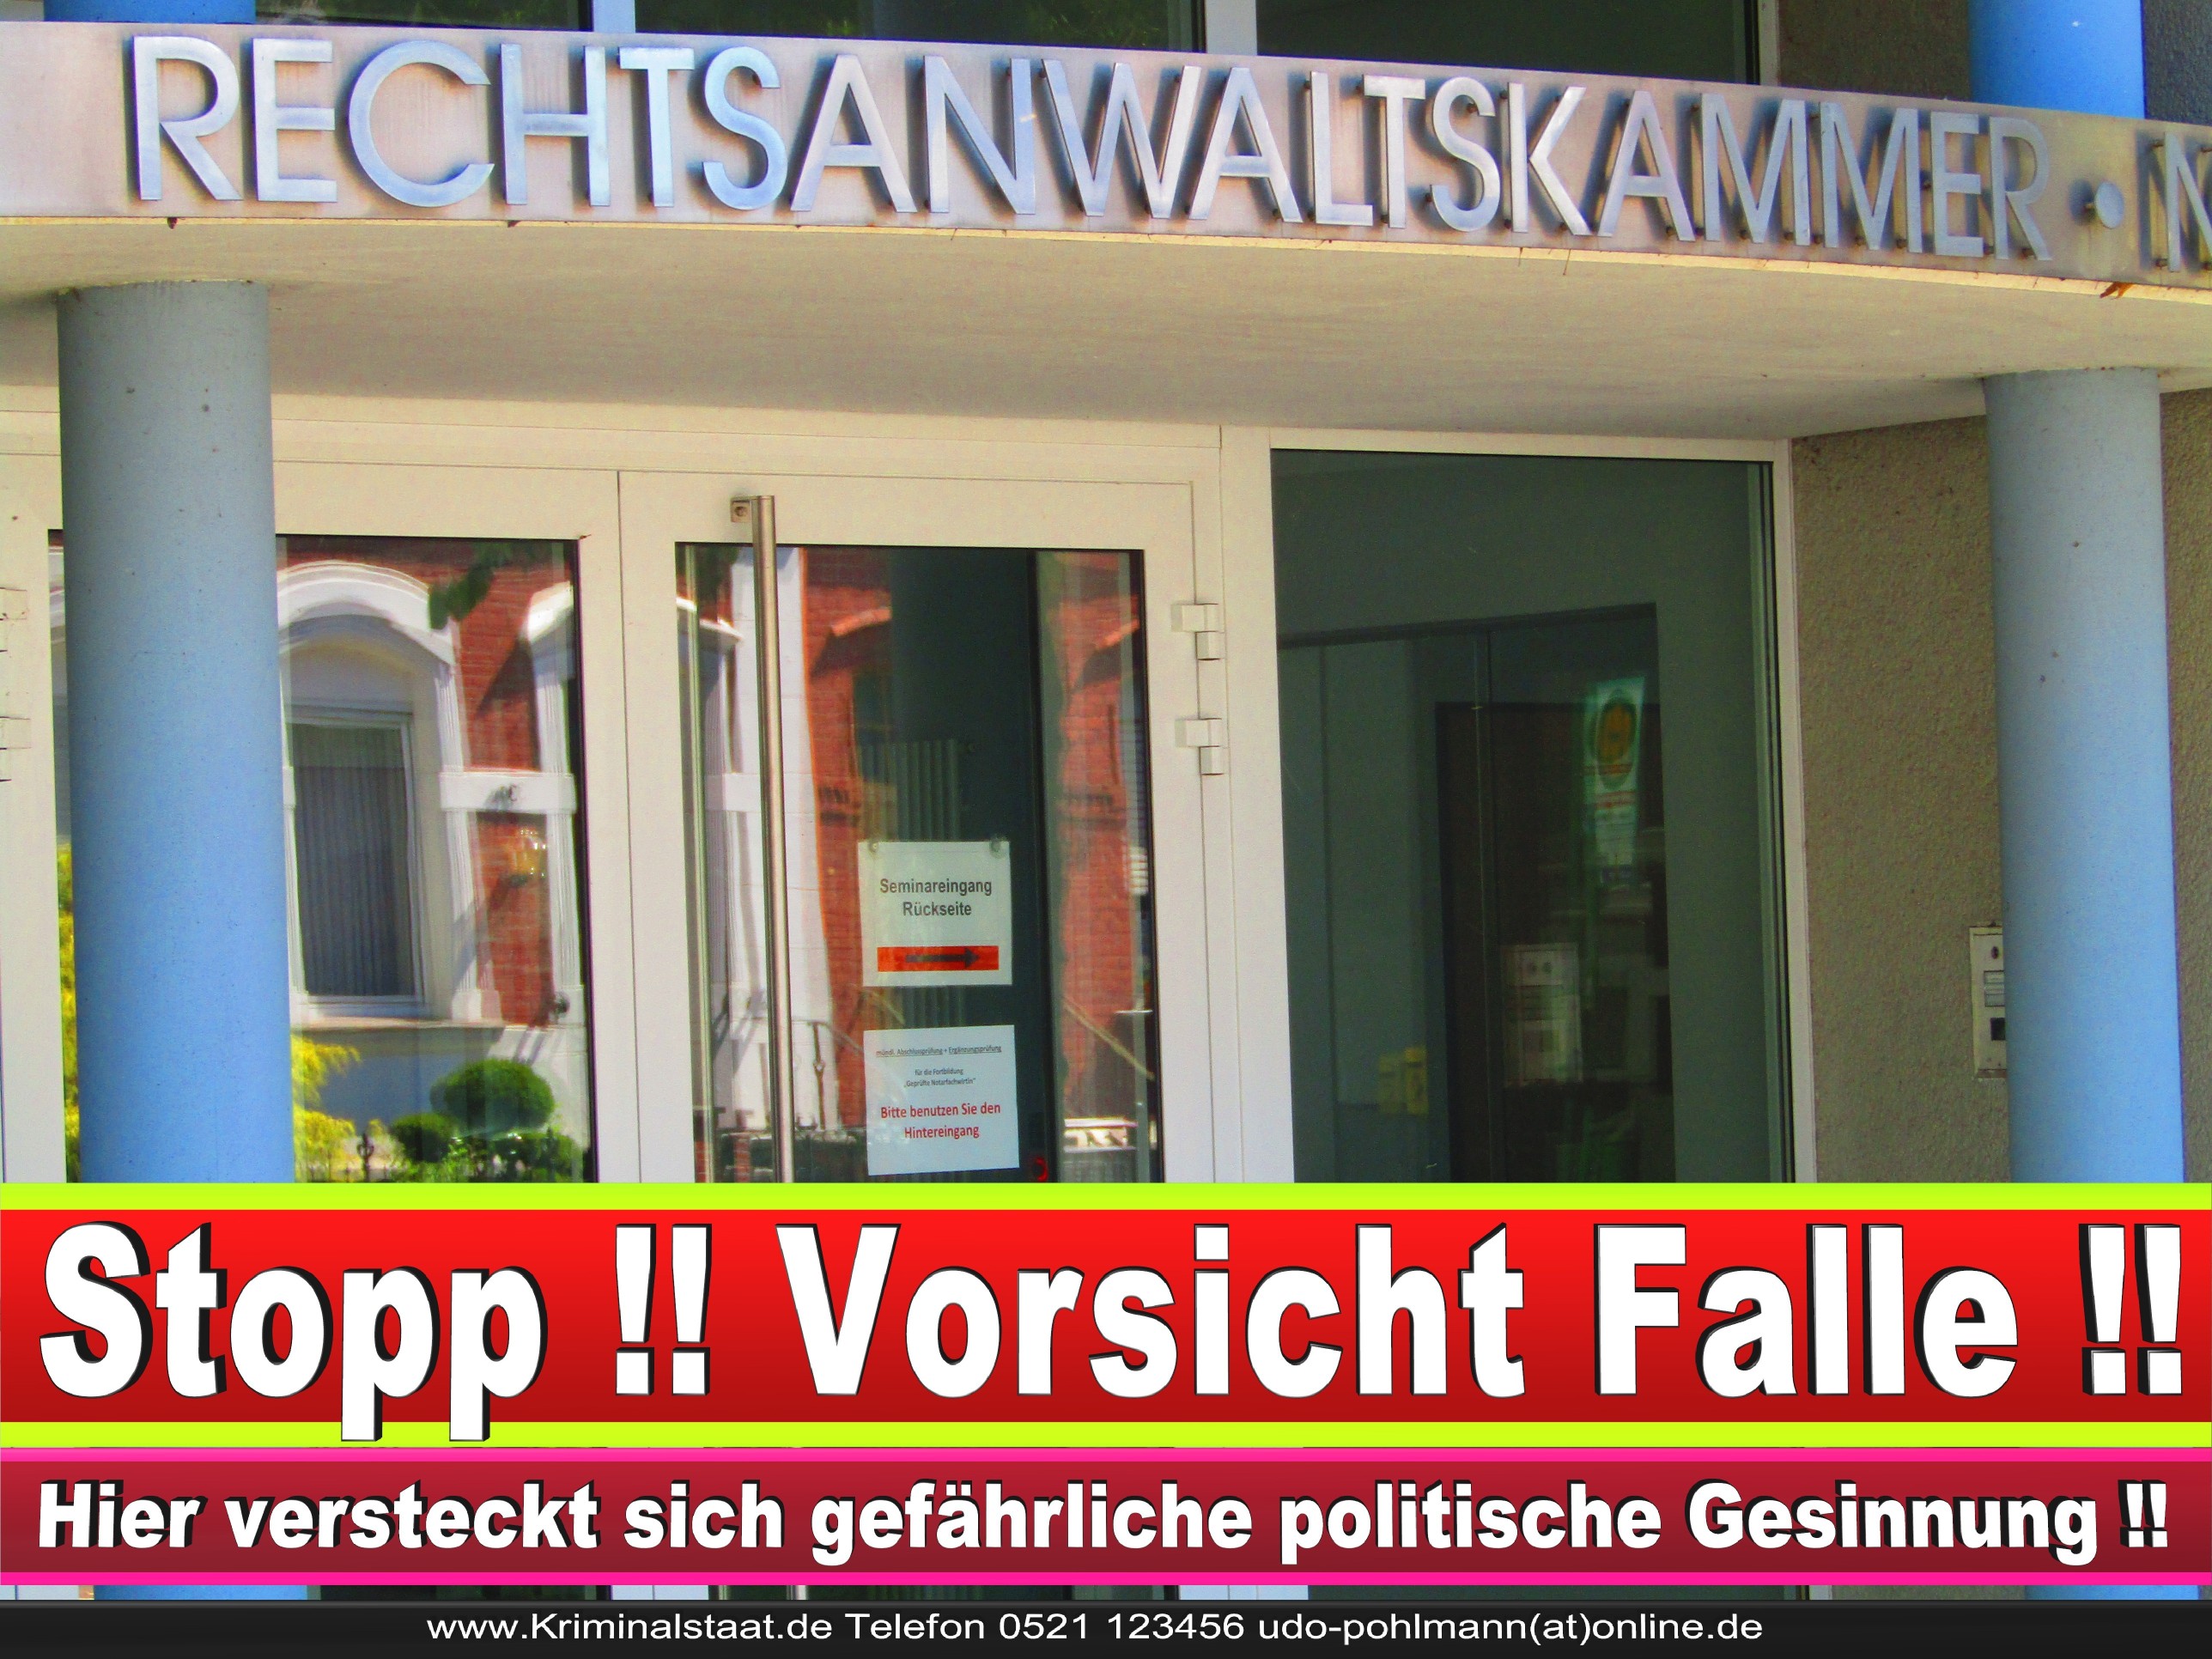 Rechtsanwaltskammer Hamm NRW Justizminister Rechtsanwalt Notar Vermögensverfall Urteil Rechtsprechung CDU SPD FDP Berufsordnung Rechtsanwälte Rechtsprechung (24) 1